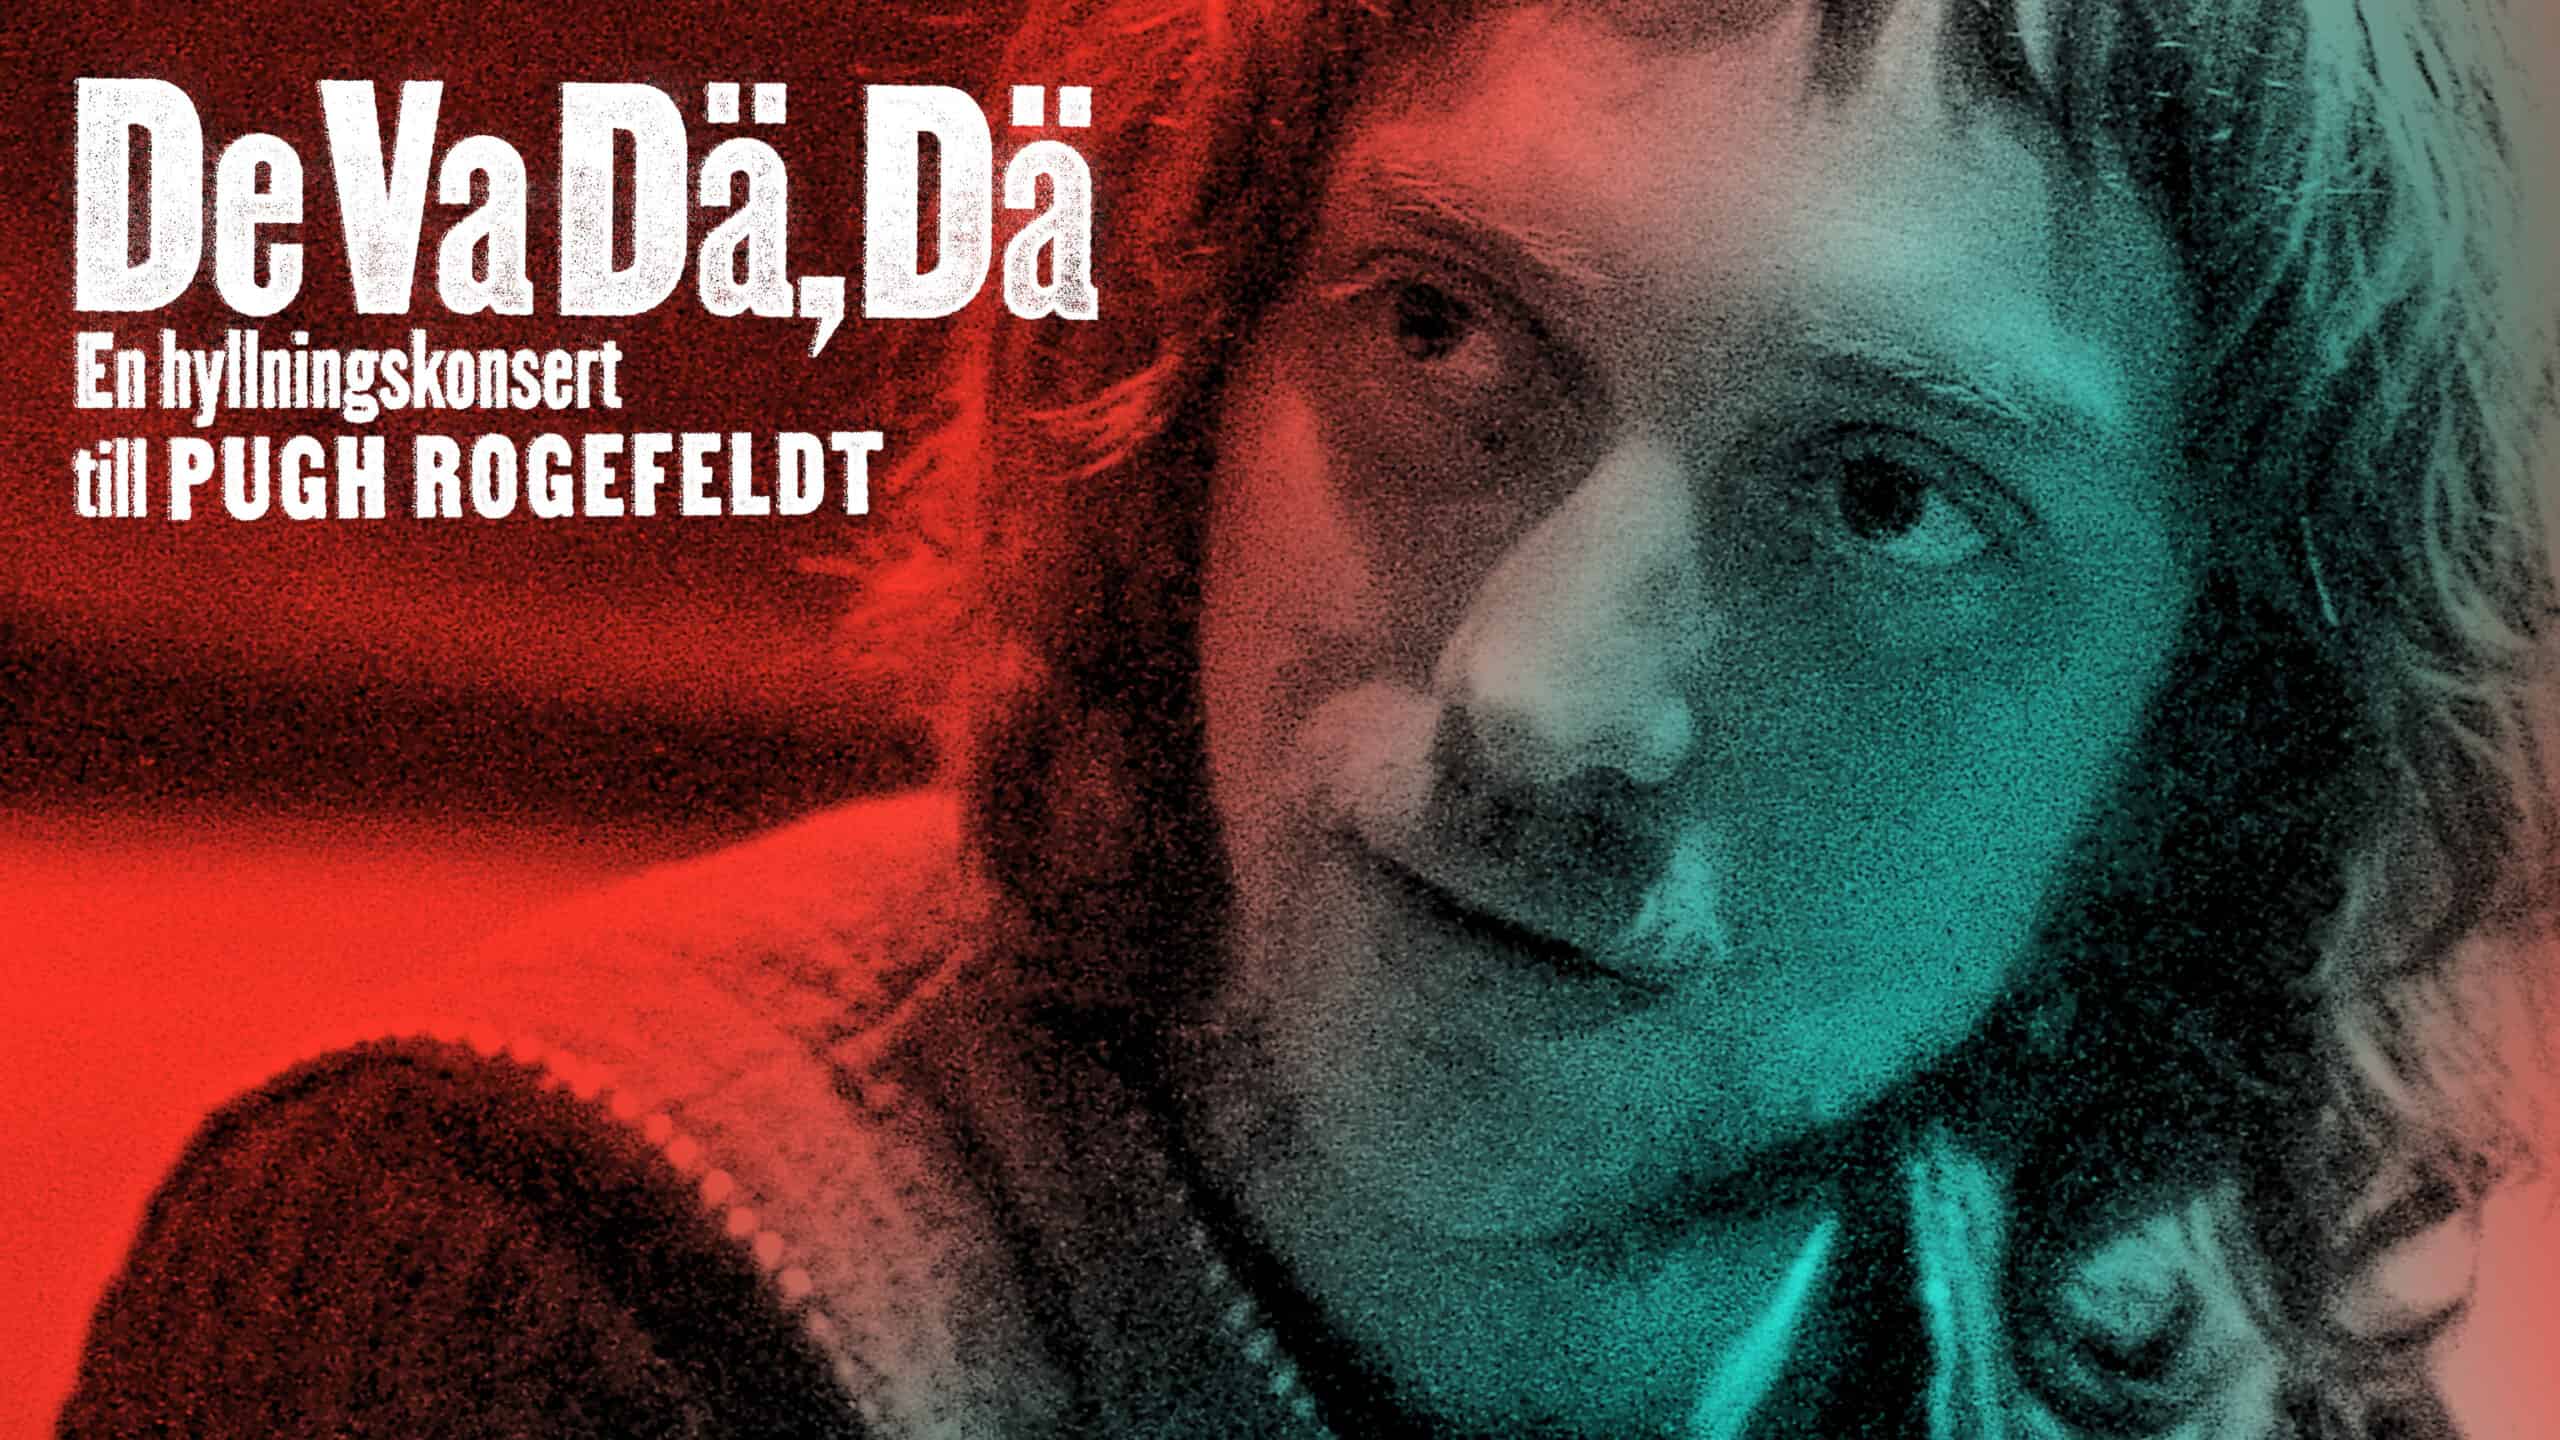 En omslagsbild för hyllningskonserten till Pugh Rogefeldt med namnet "De Va Dä, Dä".